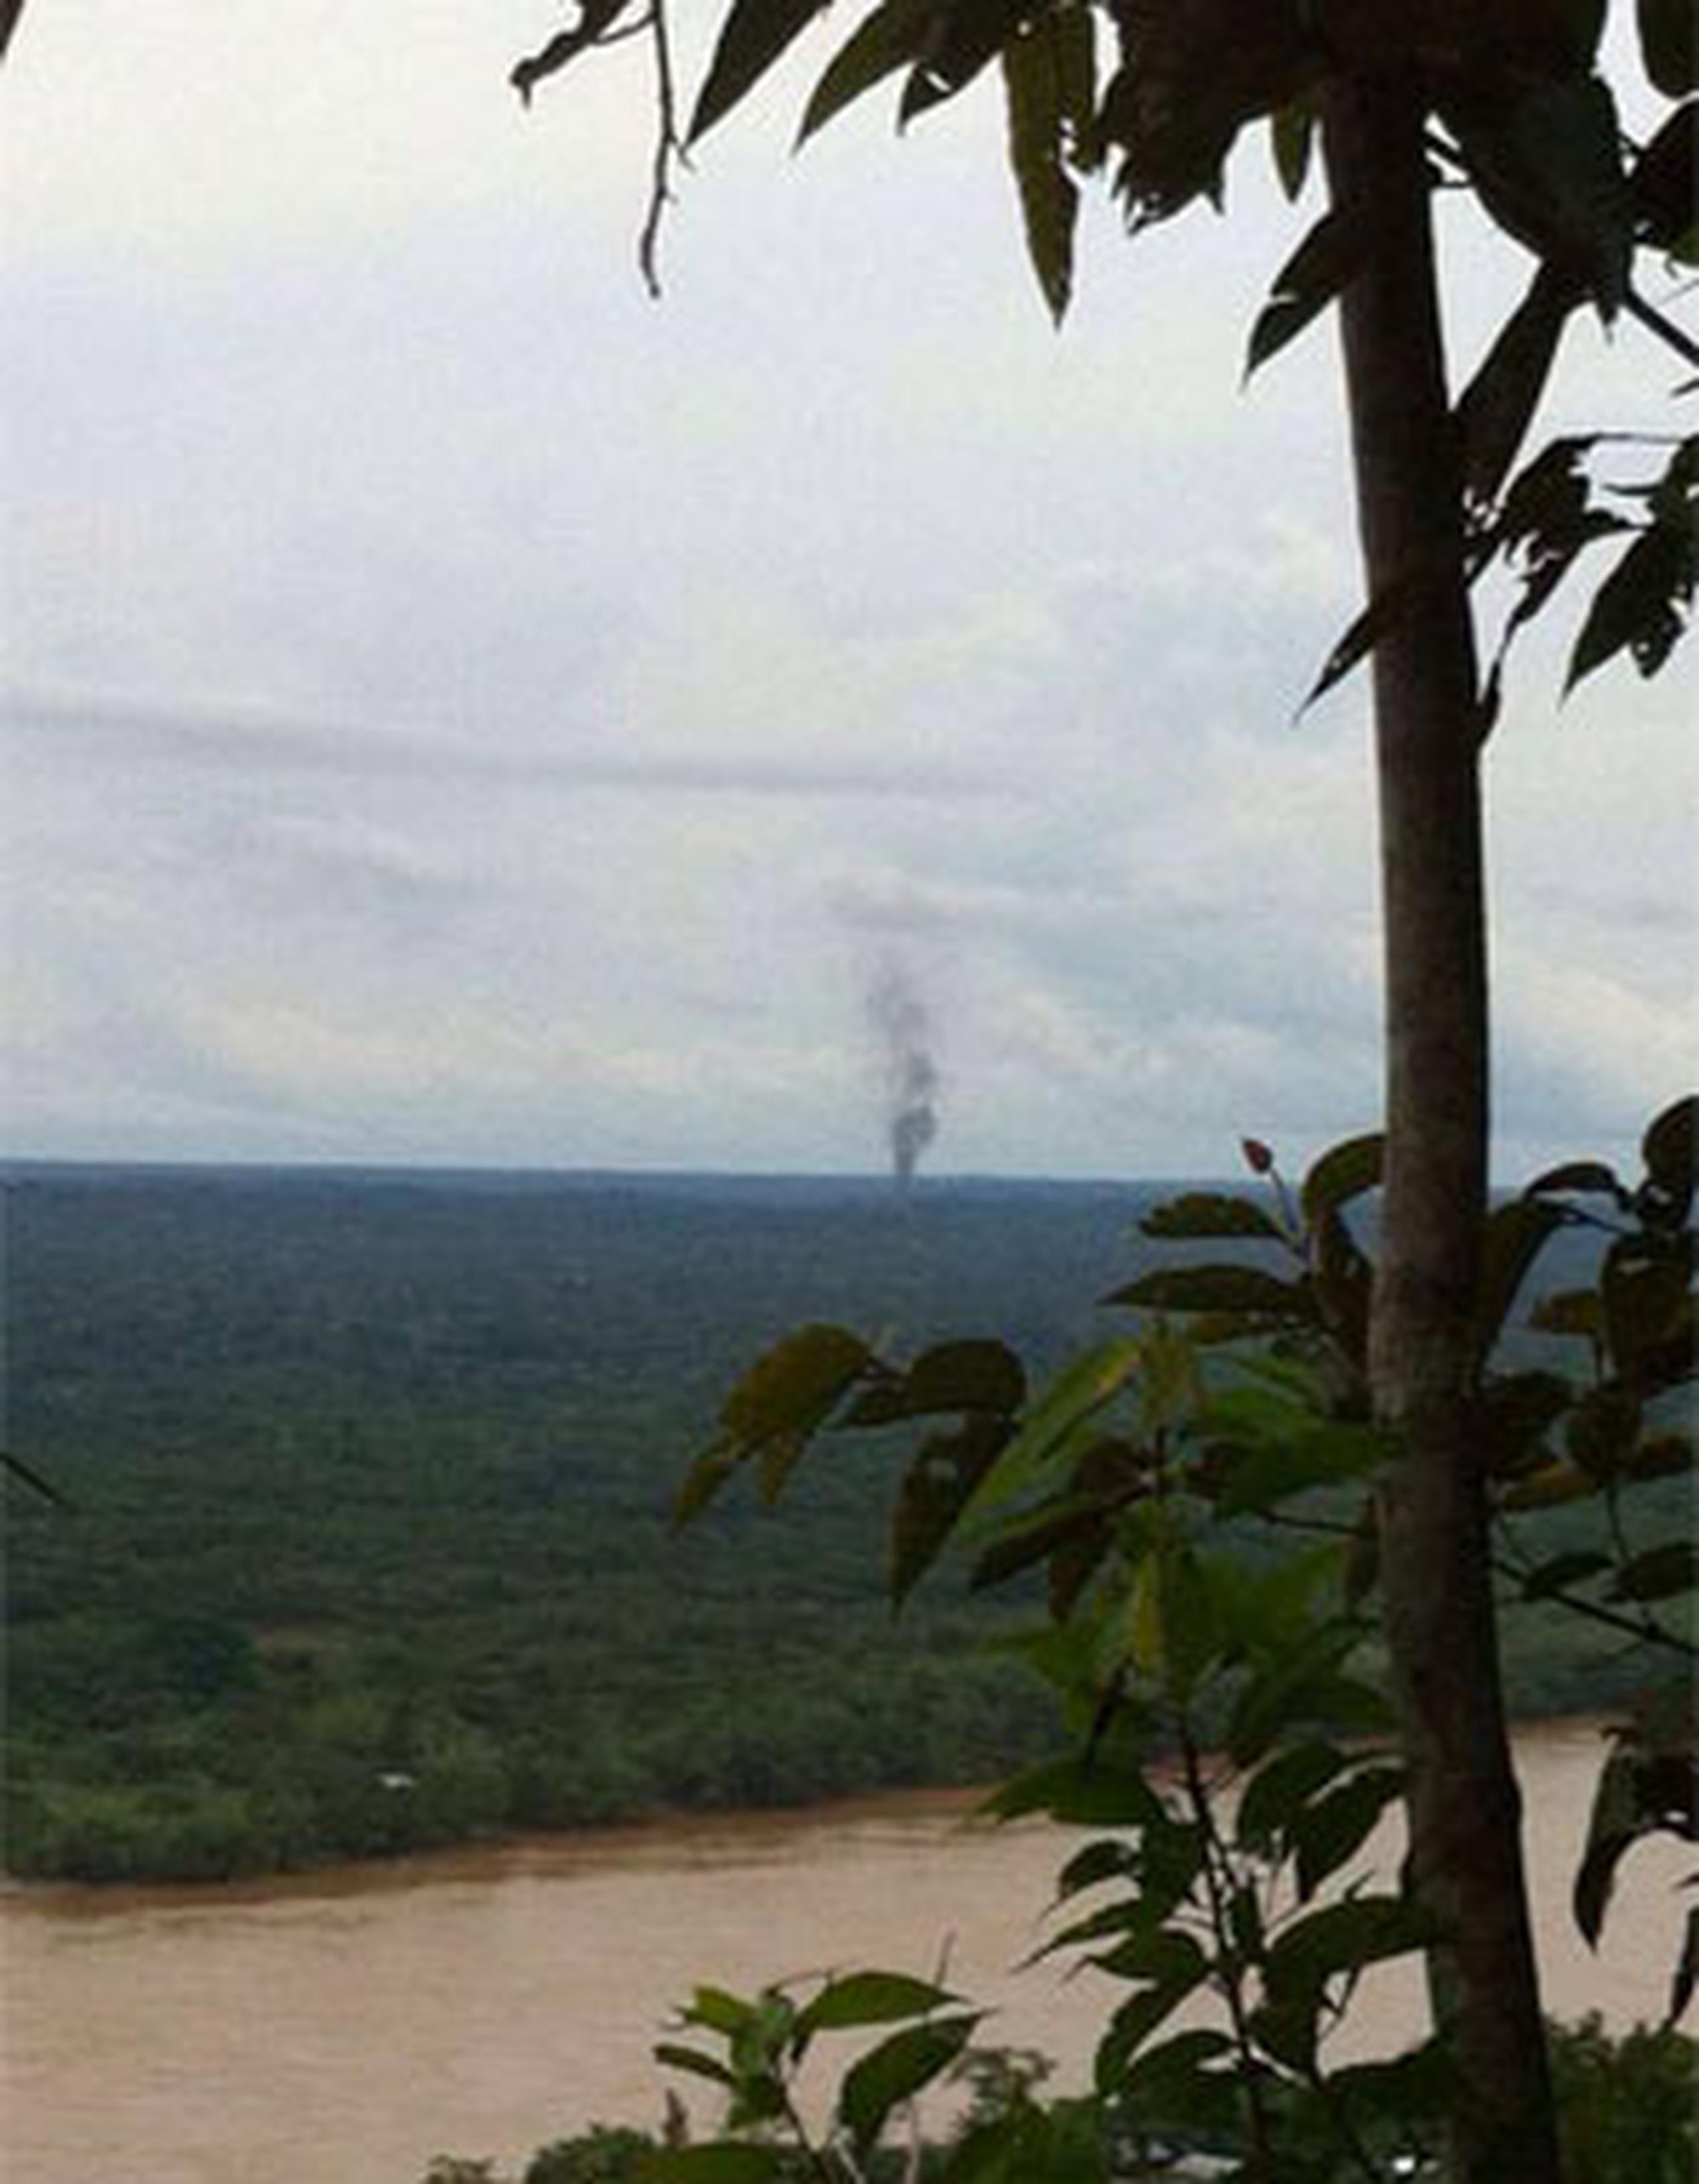 La avioneta se accidentó hoy, sábado, en una zona selvática del sur de Colombia. (Facebook/ Aeronáutica Civil de Colombia)